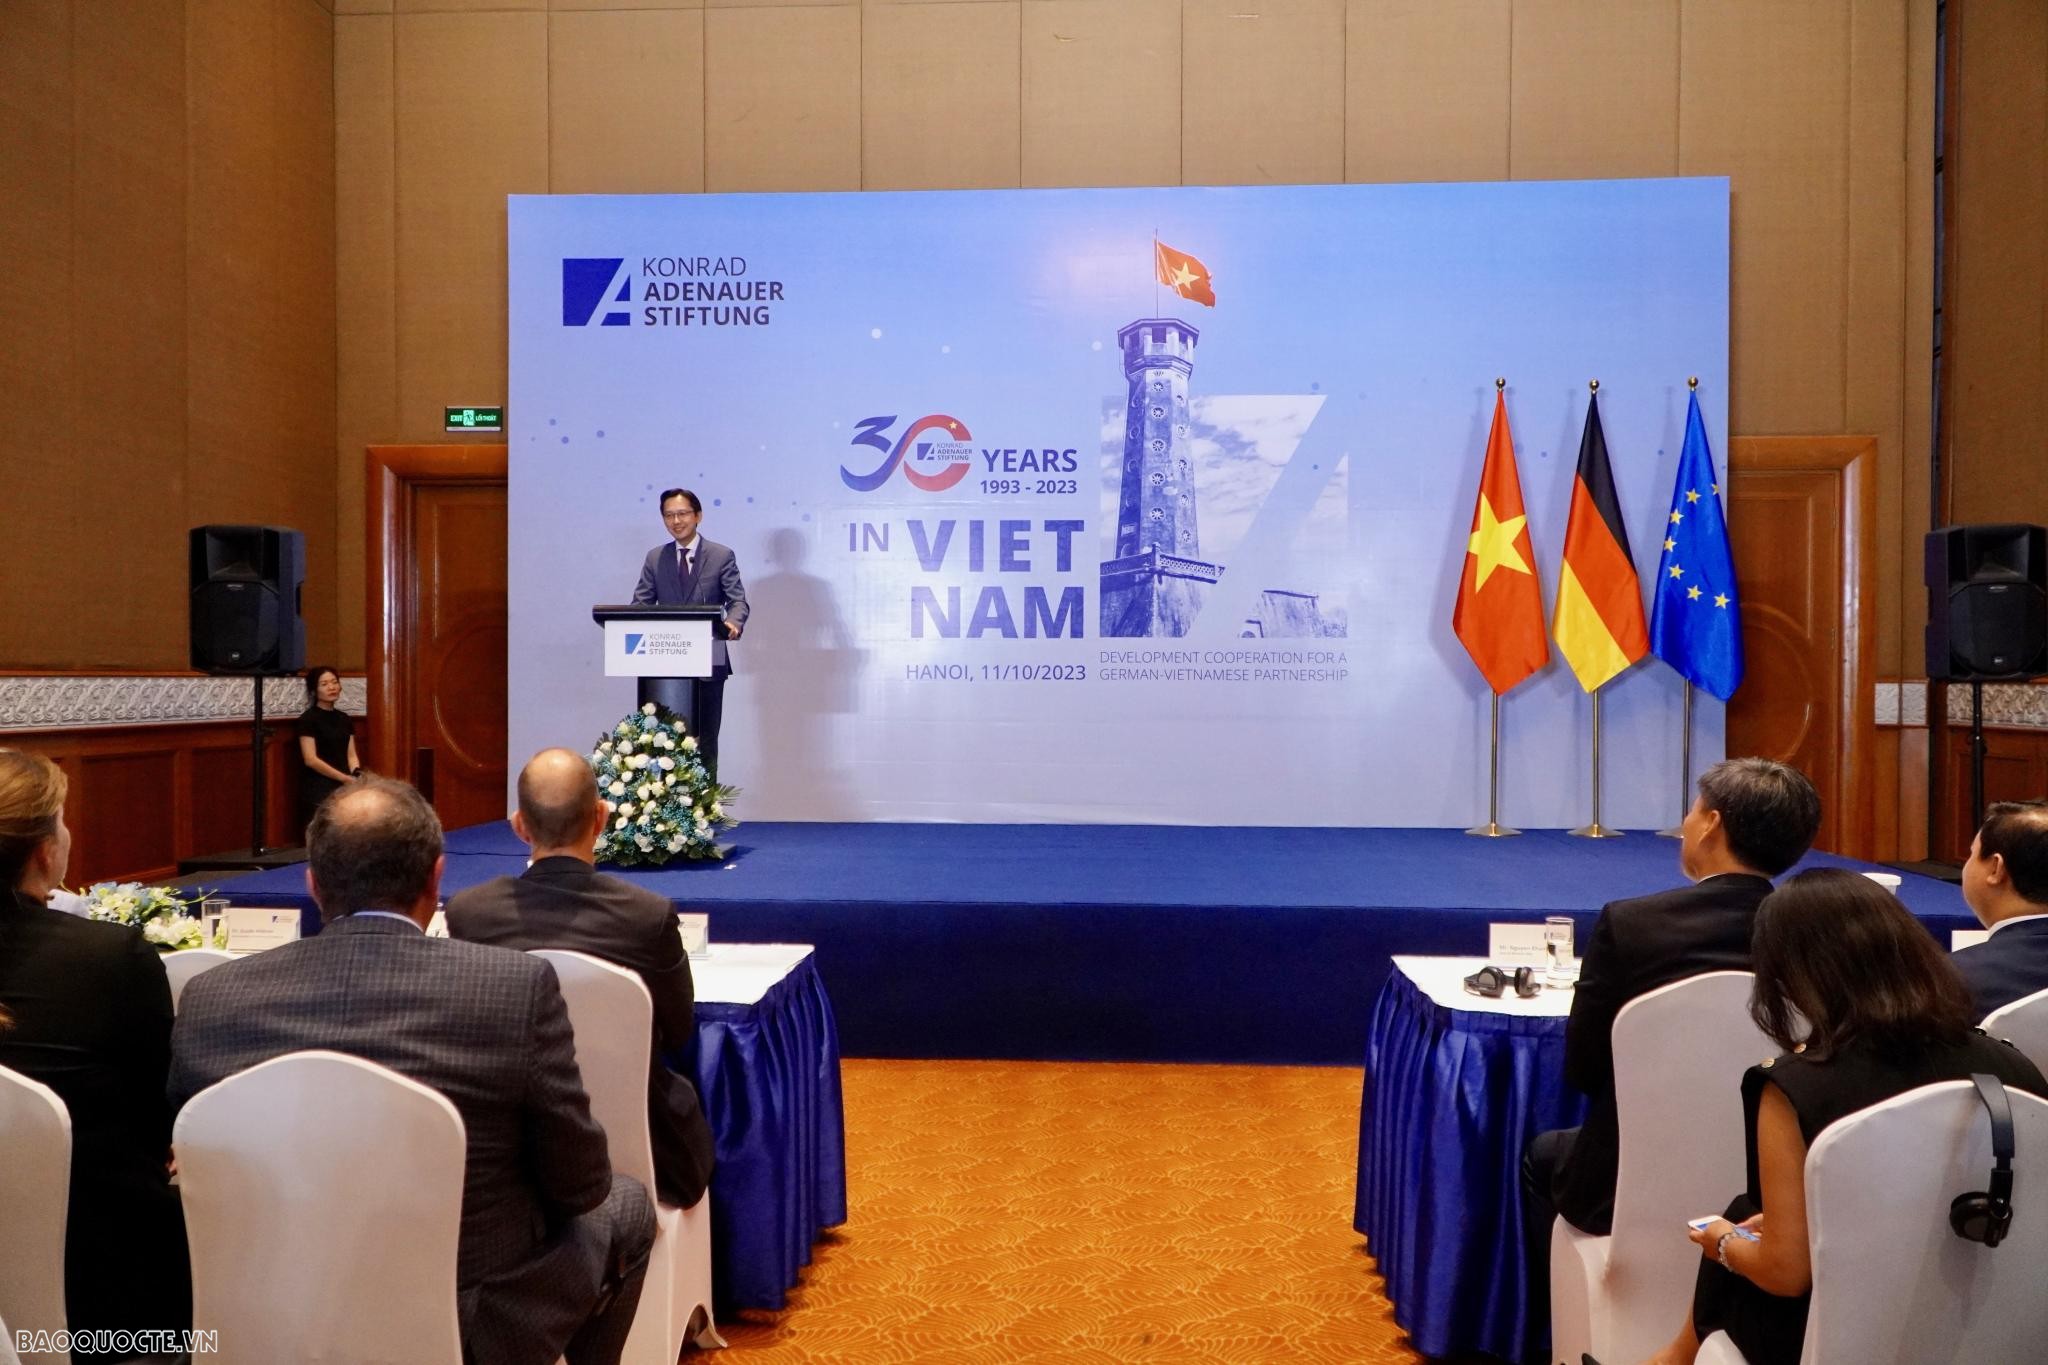 KAS đã đặt nền móng đầu tiê tại Việt Nam từ năm 1993, đánh dấu khởi đầu của một cuộc hành trình 30 nnawm cống hiến, hợp tác phát triển giữa Việt Nam-Đức. (Ảnh: Tuấn Việt)